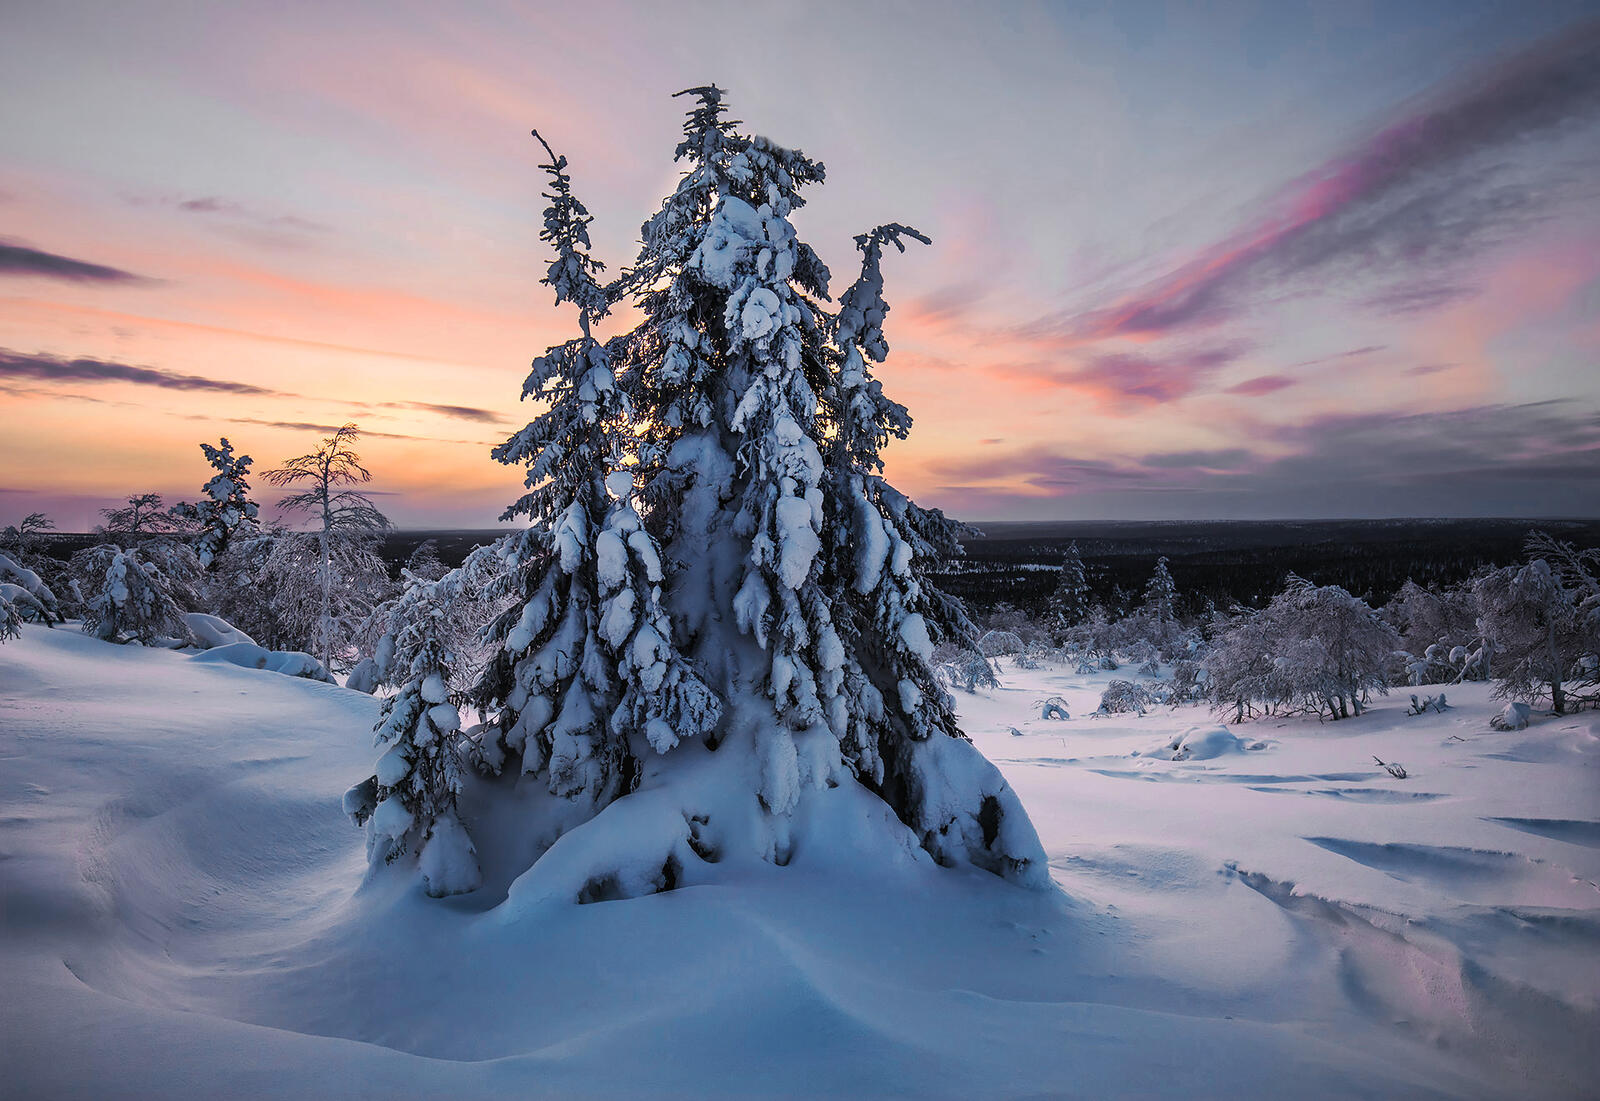 Обои снег Финляндия пейзаж на рабочий стол